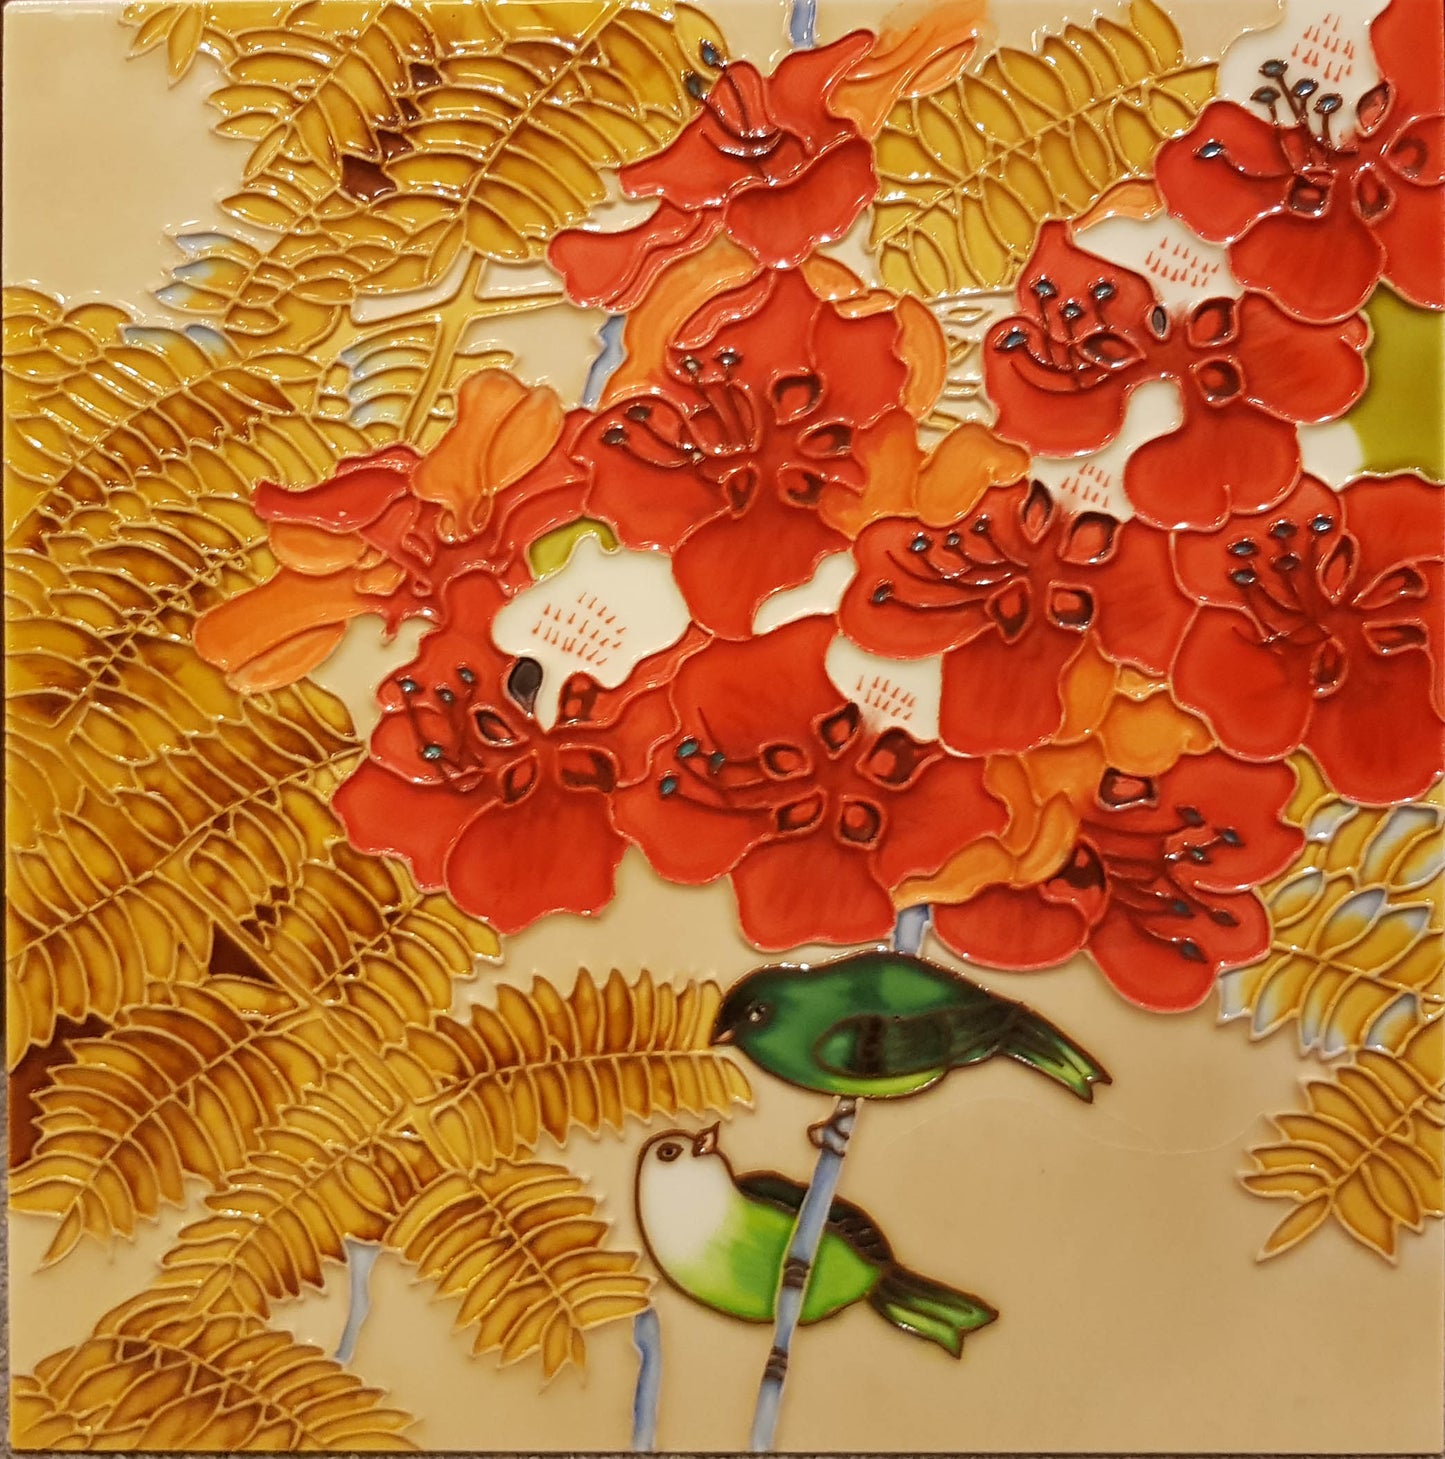 3504 Flying Bird - Red Flower 30cm x 30cm Pureland Ceramic Tile